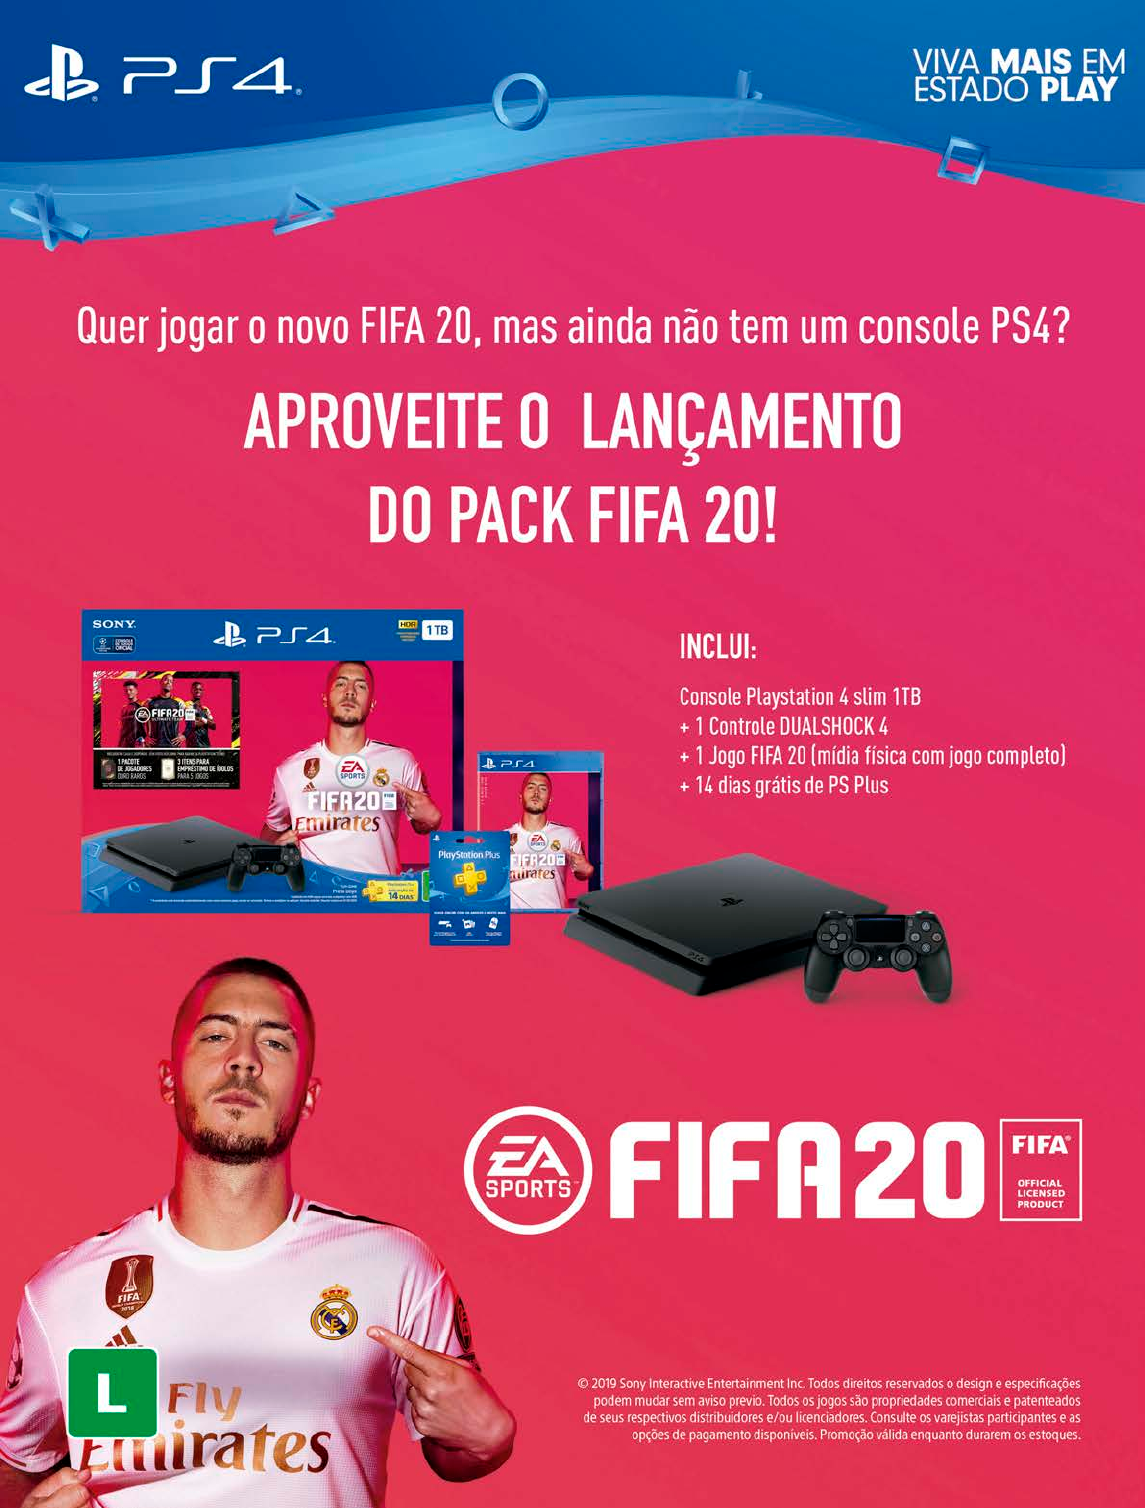 Console Playstation 5 Digital Edition + Jogo FIFA 23 - PS5 em Promoção no  Oferta Esperta